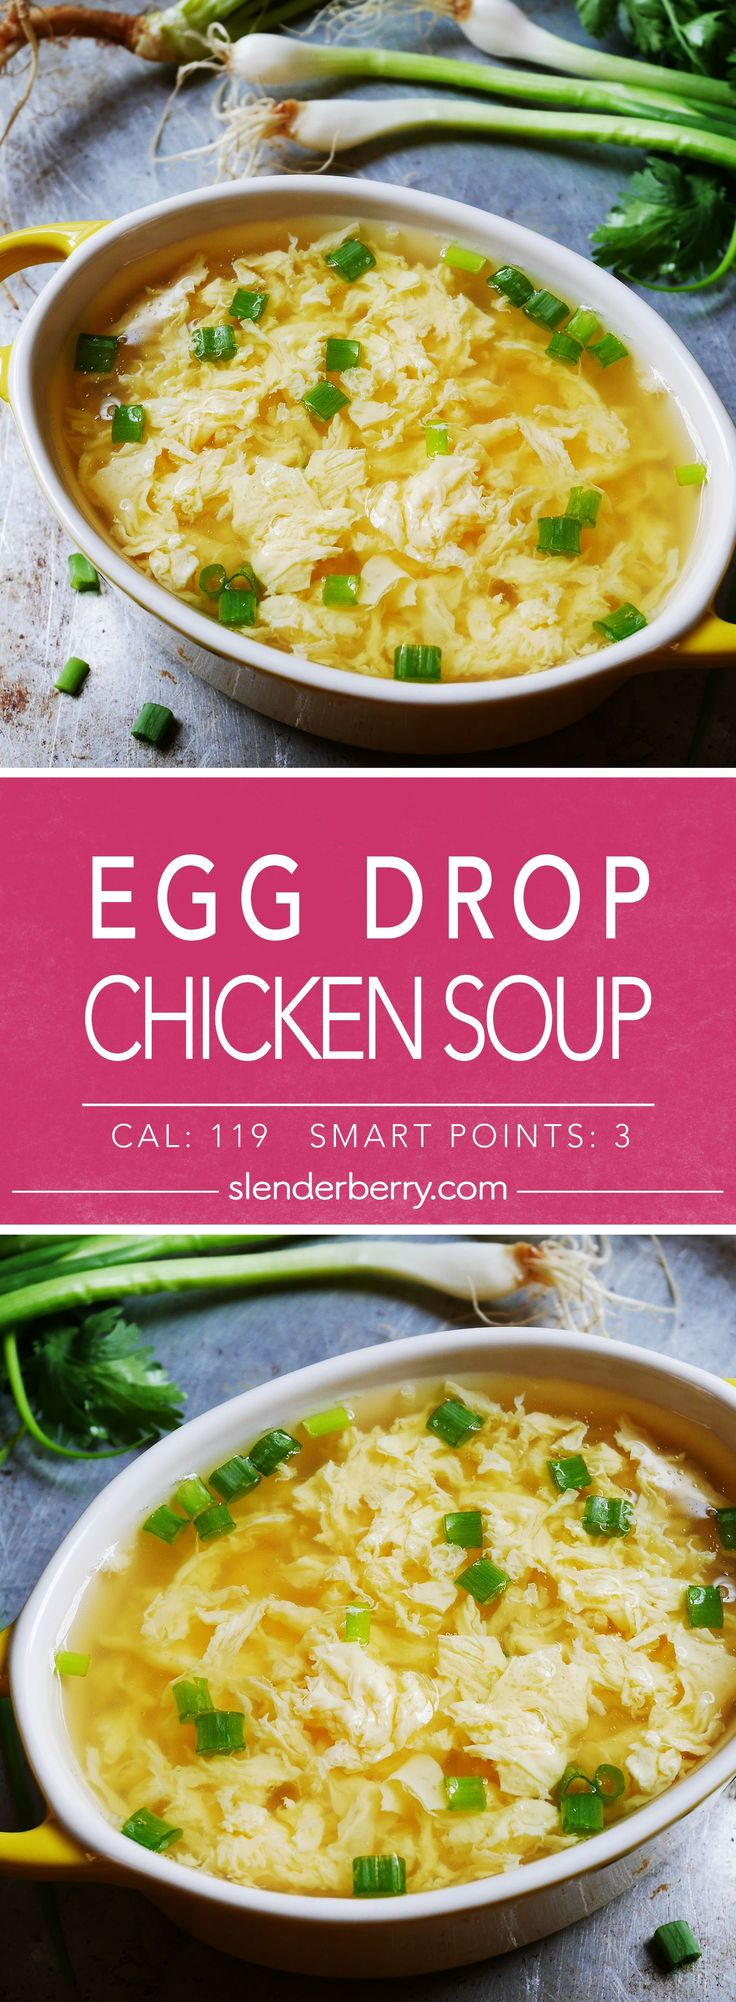 Low Calorie Chicken Soup
 Low Calorie Egg Drop Chicken Soup Recipe 119 Calories